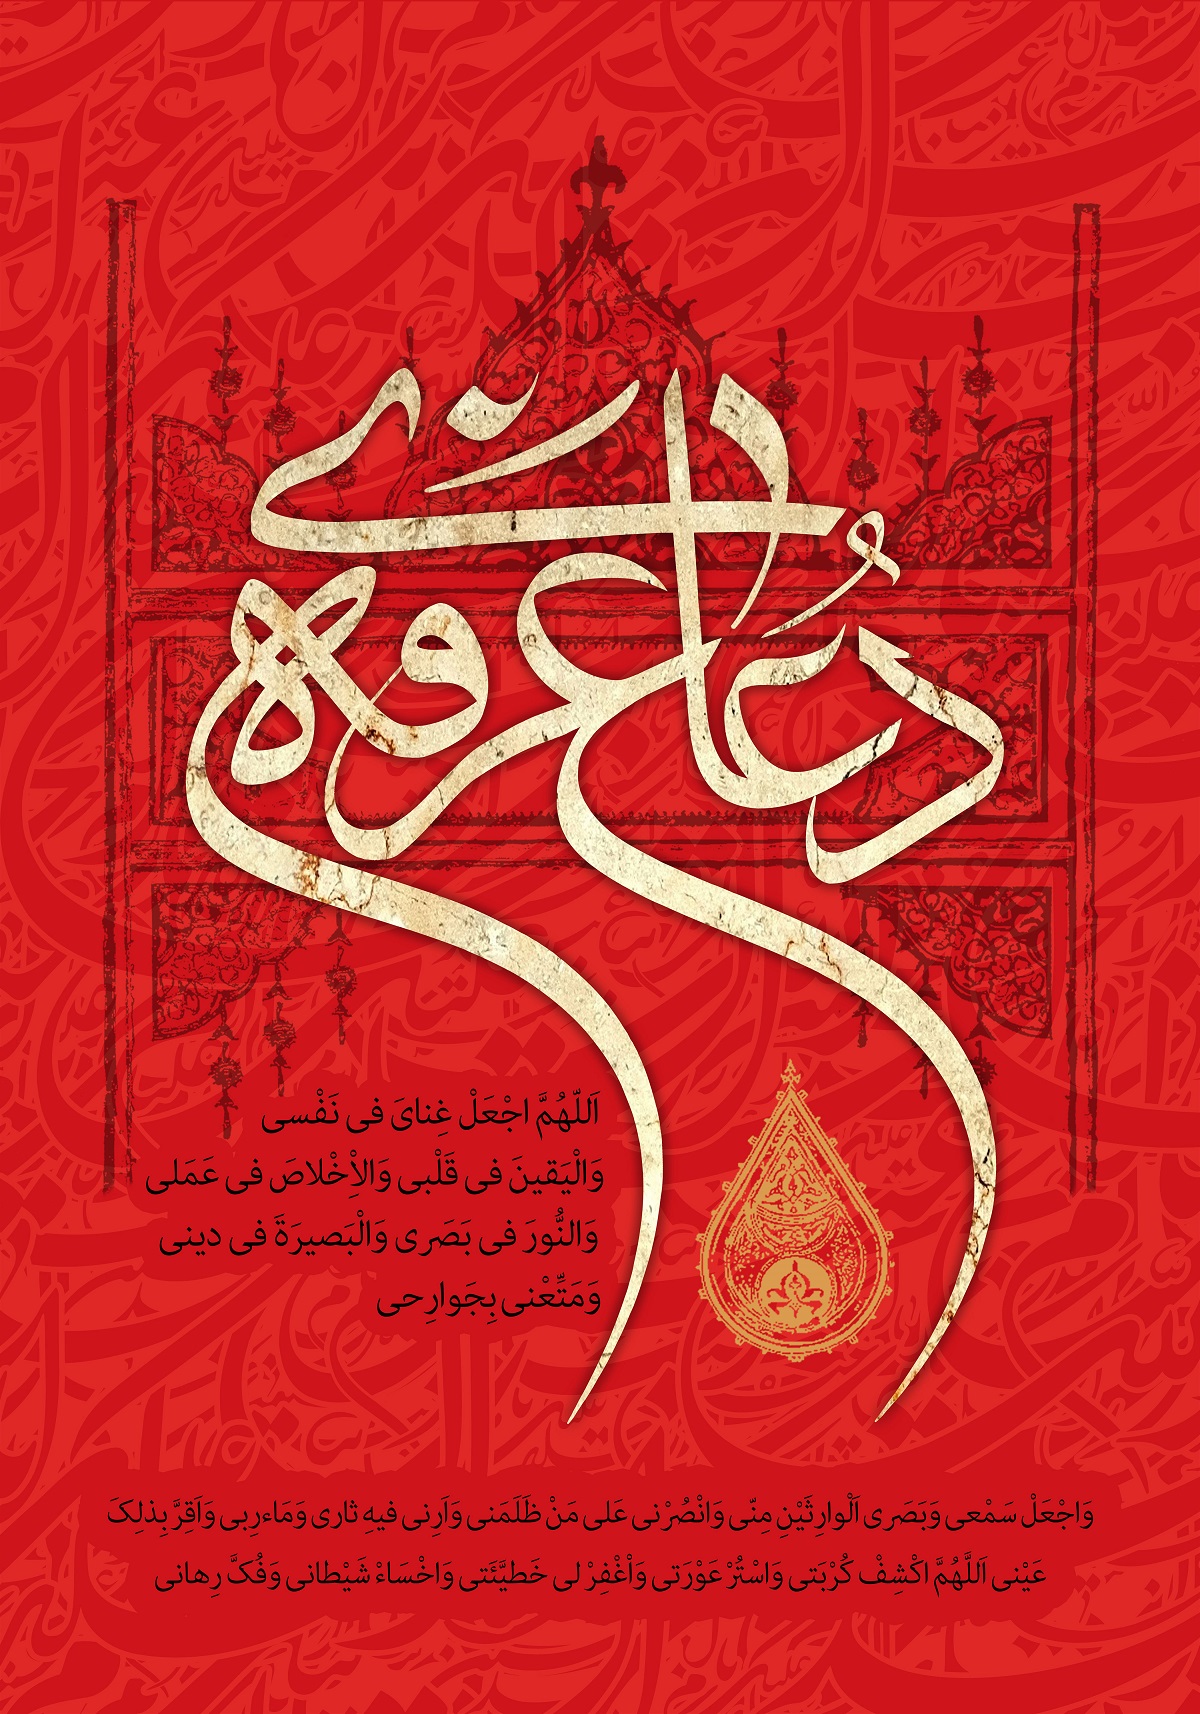 فایل لایه باز (psd): پوستر دعای عرفه بمناسبت روز عرفه